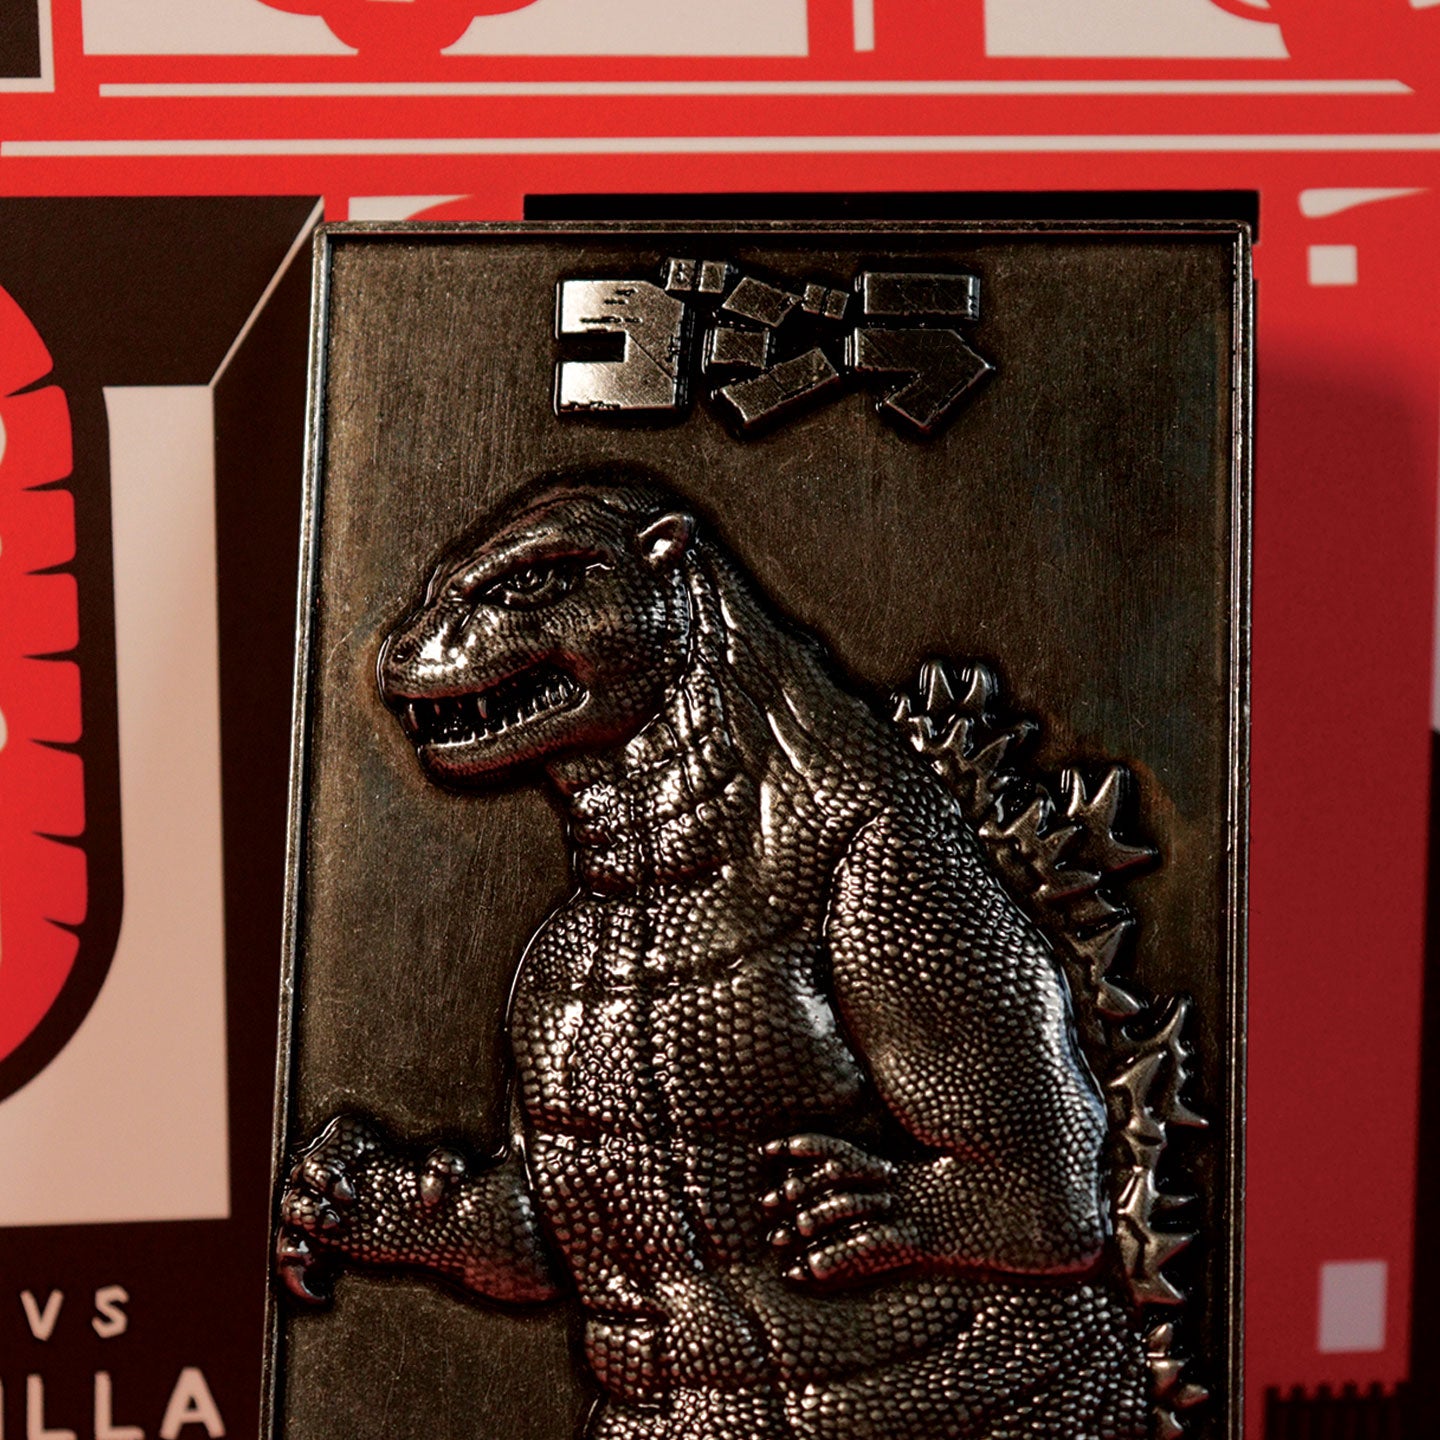 Godzilla 70th Anniversary Limited Edition Twin Ingot Set